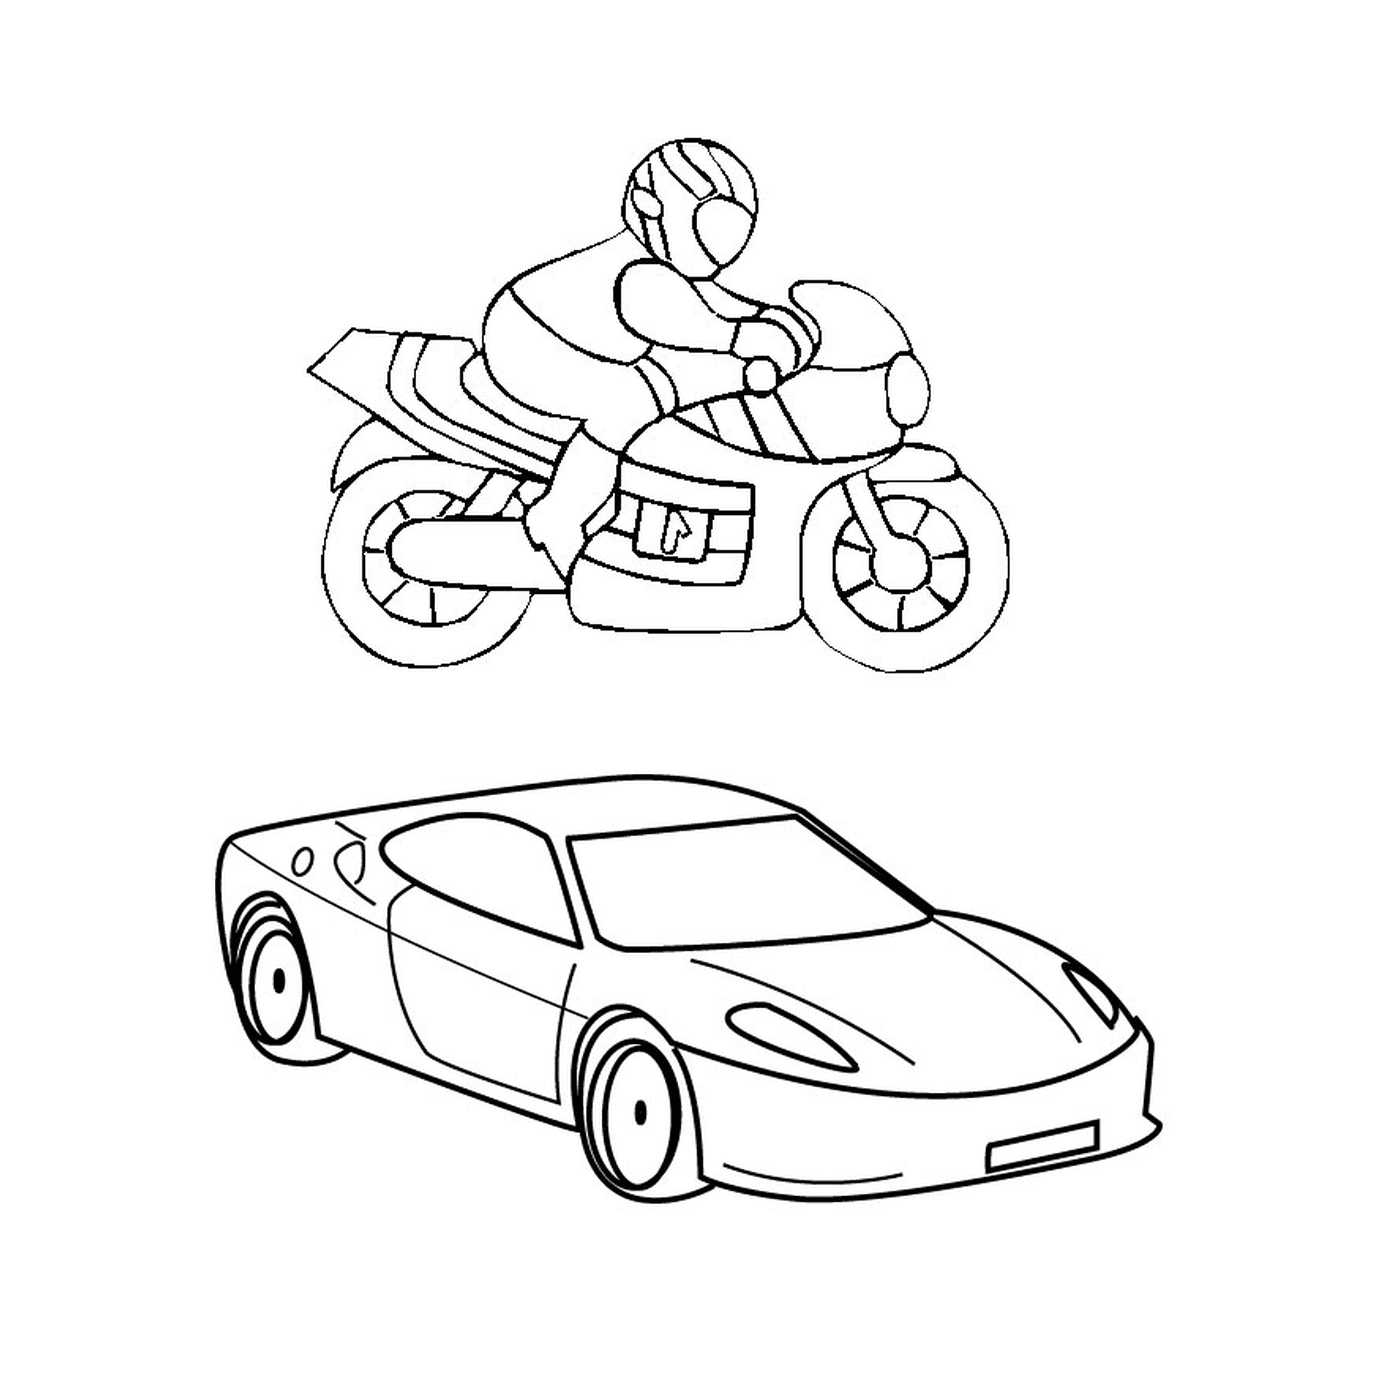  Мотоцикл и автомобиль, никого на мотоцикле 